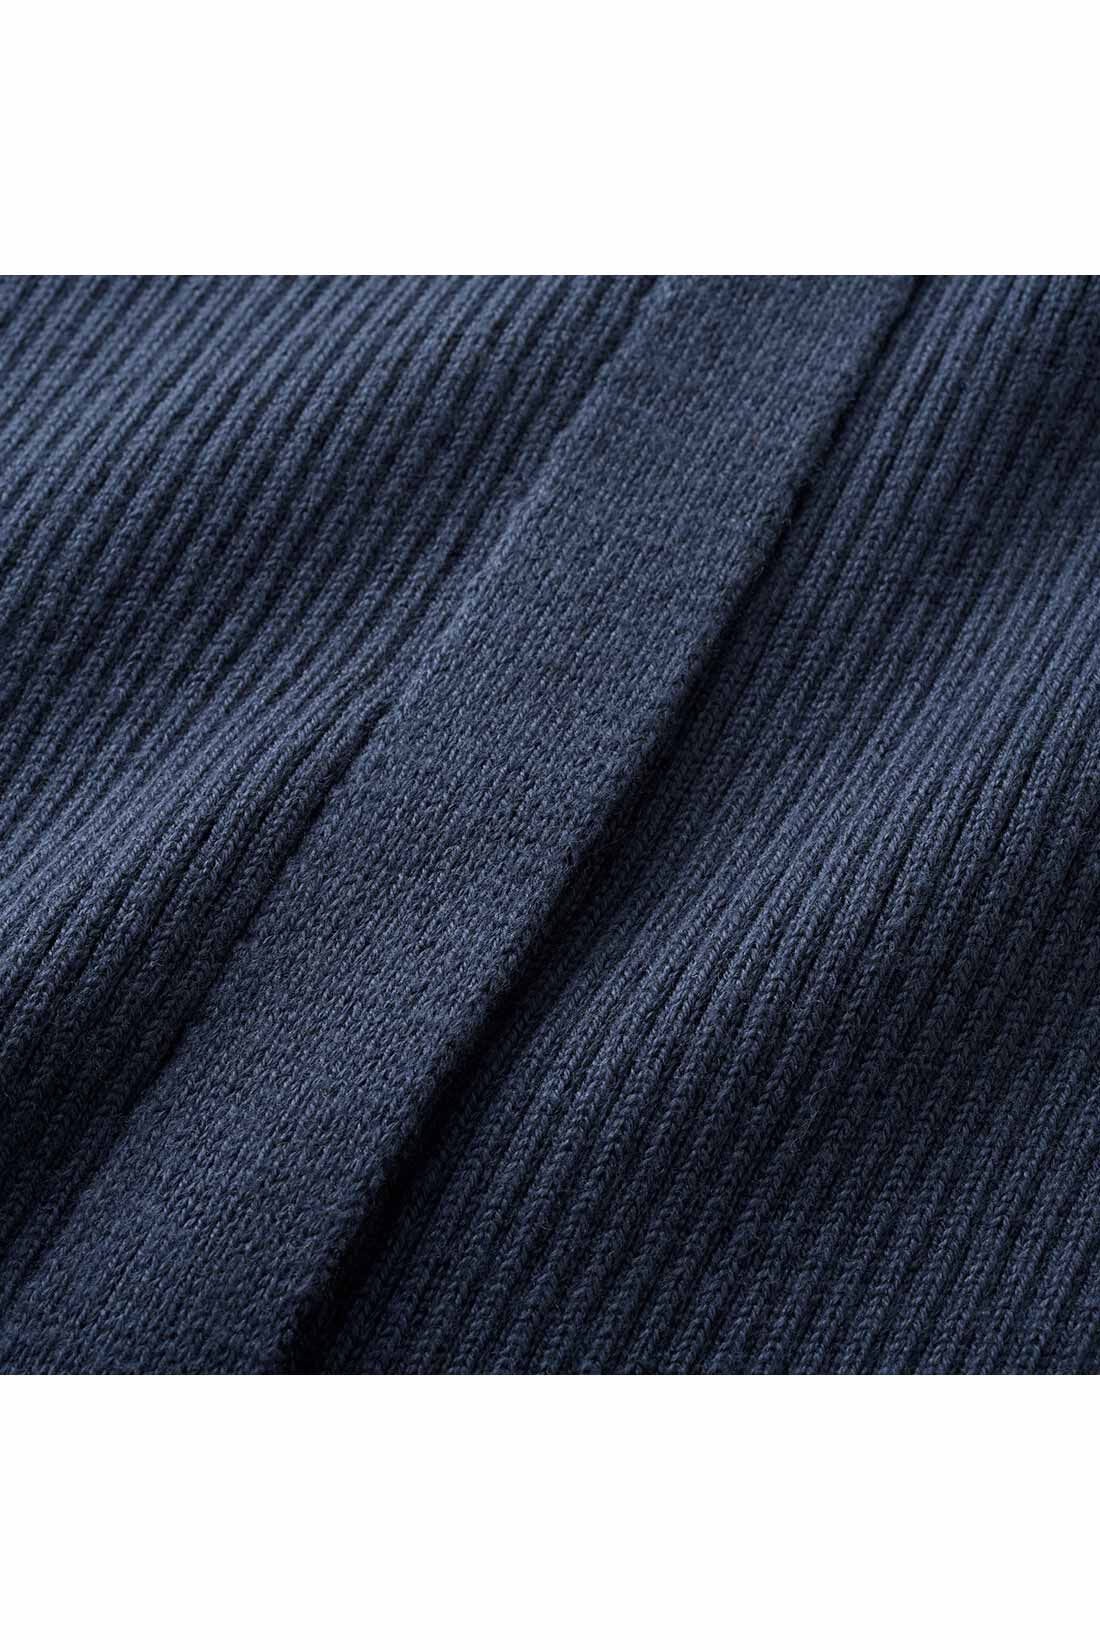 イディット|IEDIT[イディット]　Iラインシルエットのスリットデザインリブニットスカート〈ブラック〉|体形を拾いにくい厚みのあるリブ素材。コーデを選ばないほどよいリブ幅です。